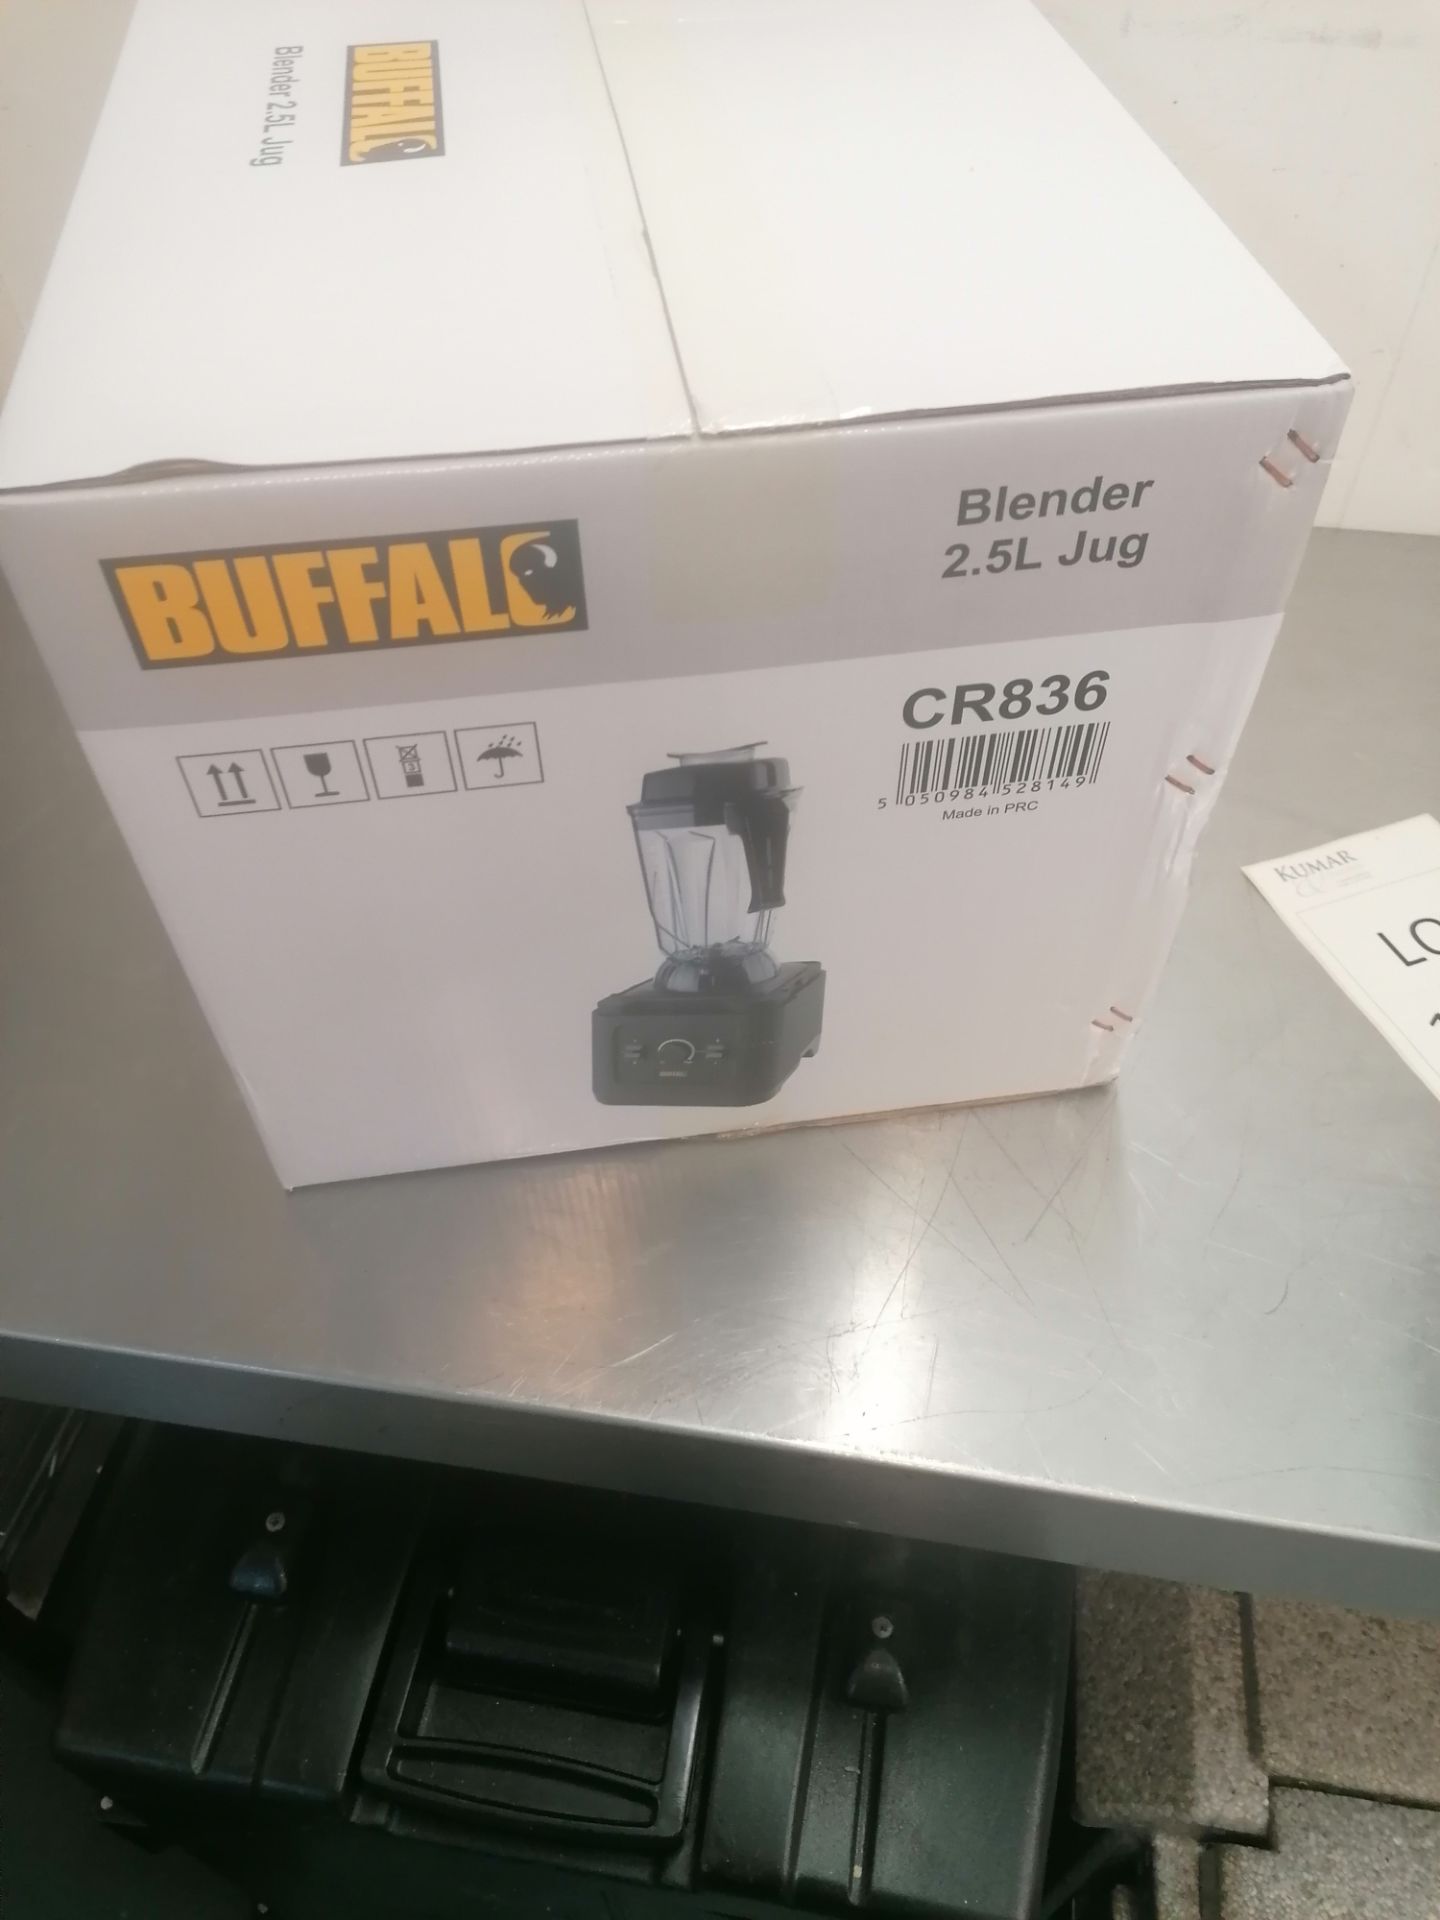 Buffalo MOCR836 blender 2.5 L new boxed, Serial No. 1.9811E+12 - Image 4 of 4